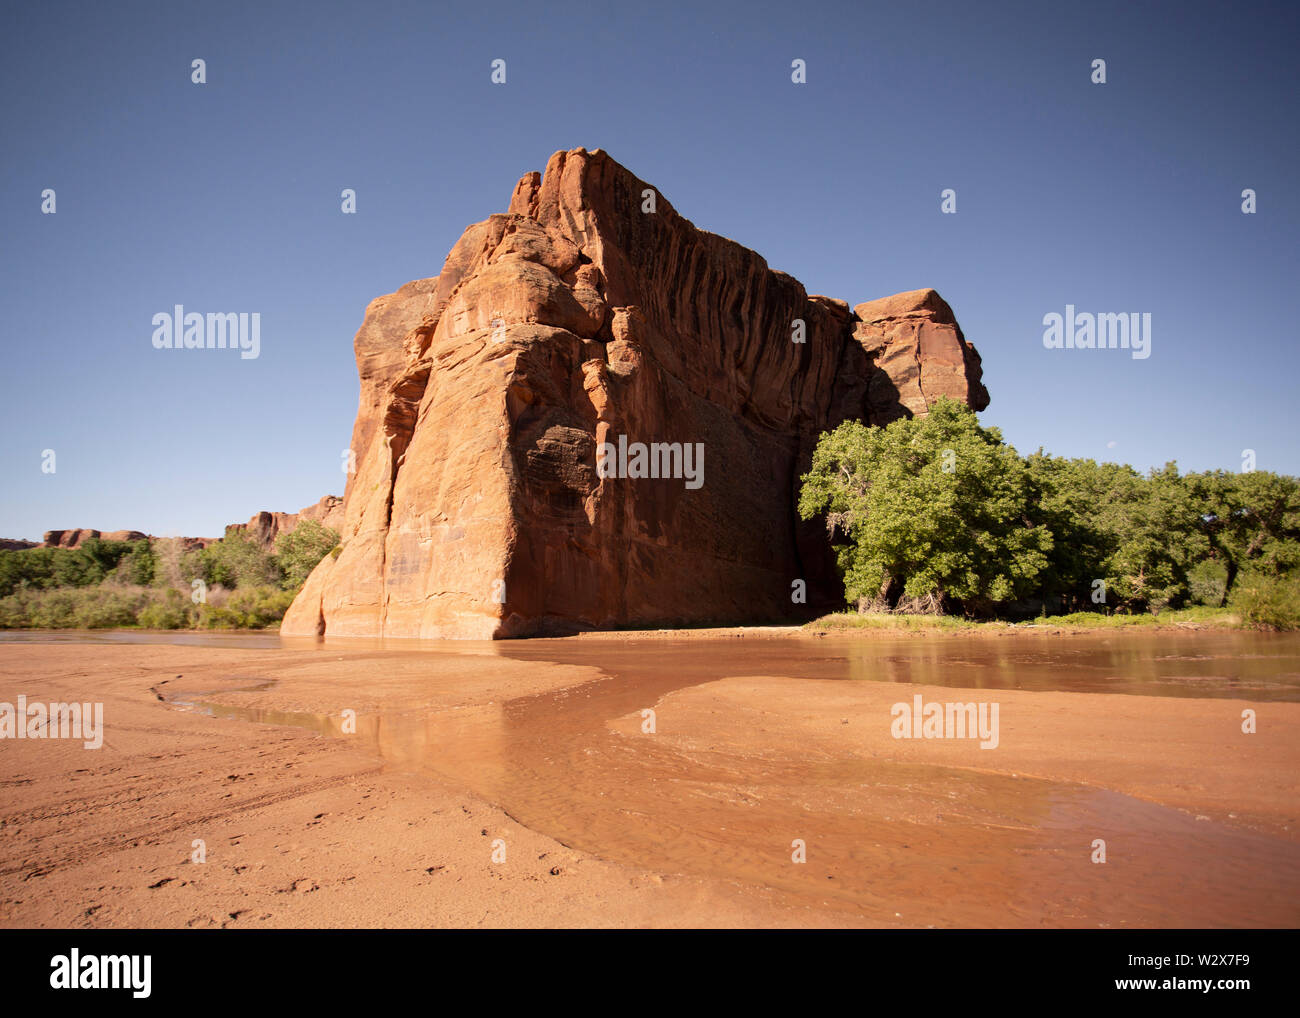 Ruines archéologiques de Canyon de Chelly National Monument, Navajo Nation, Arizona Banque D'Images